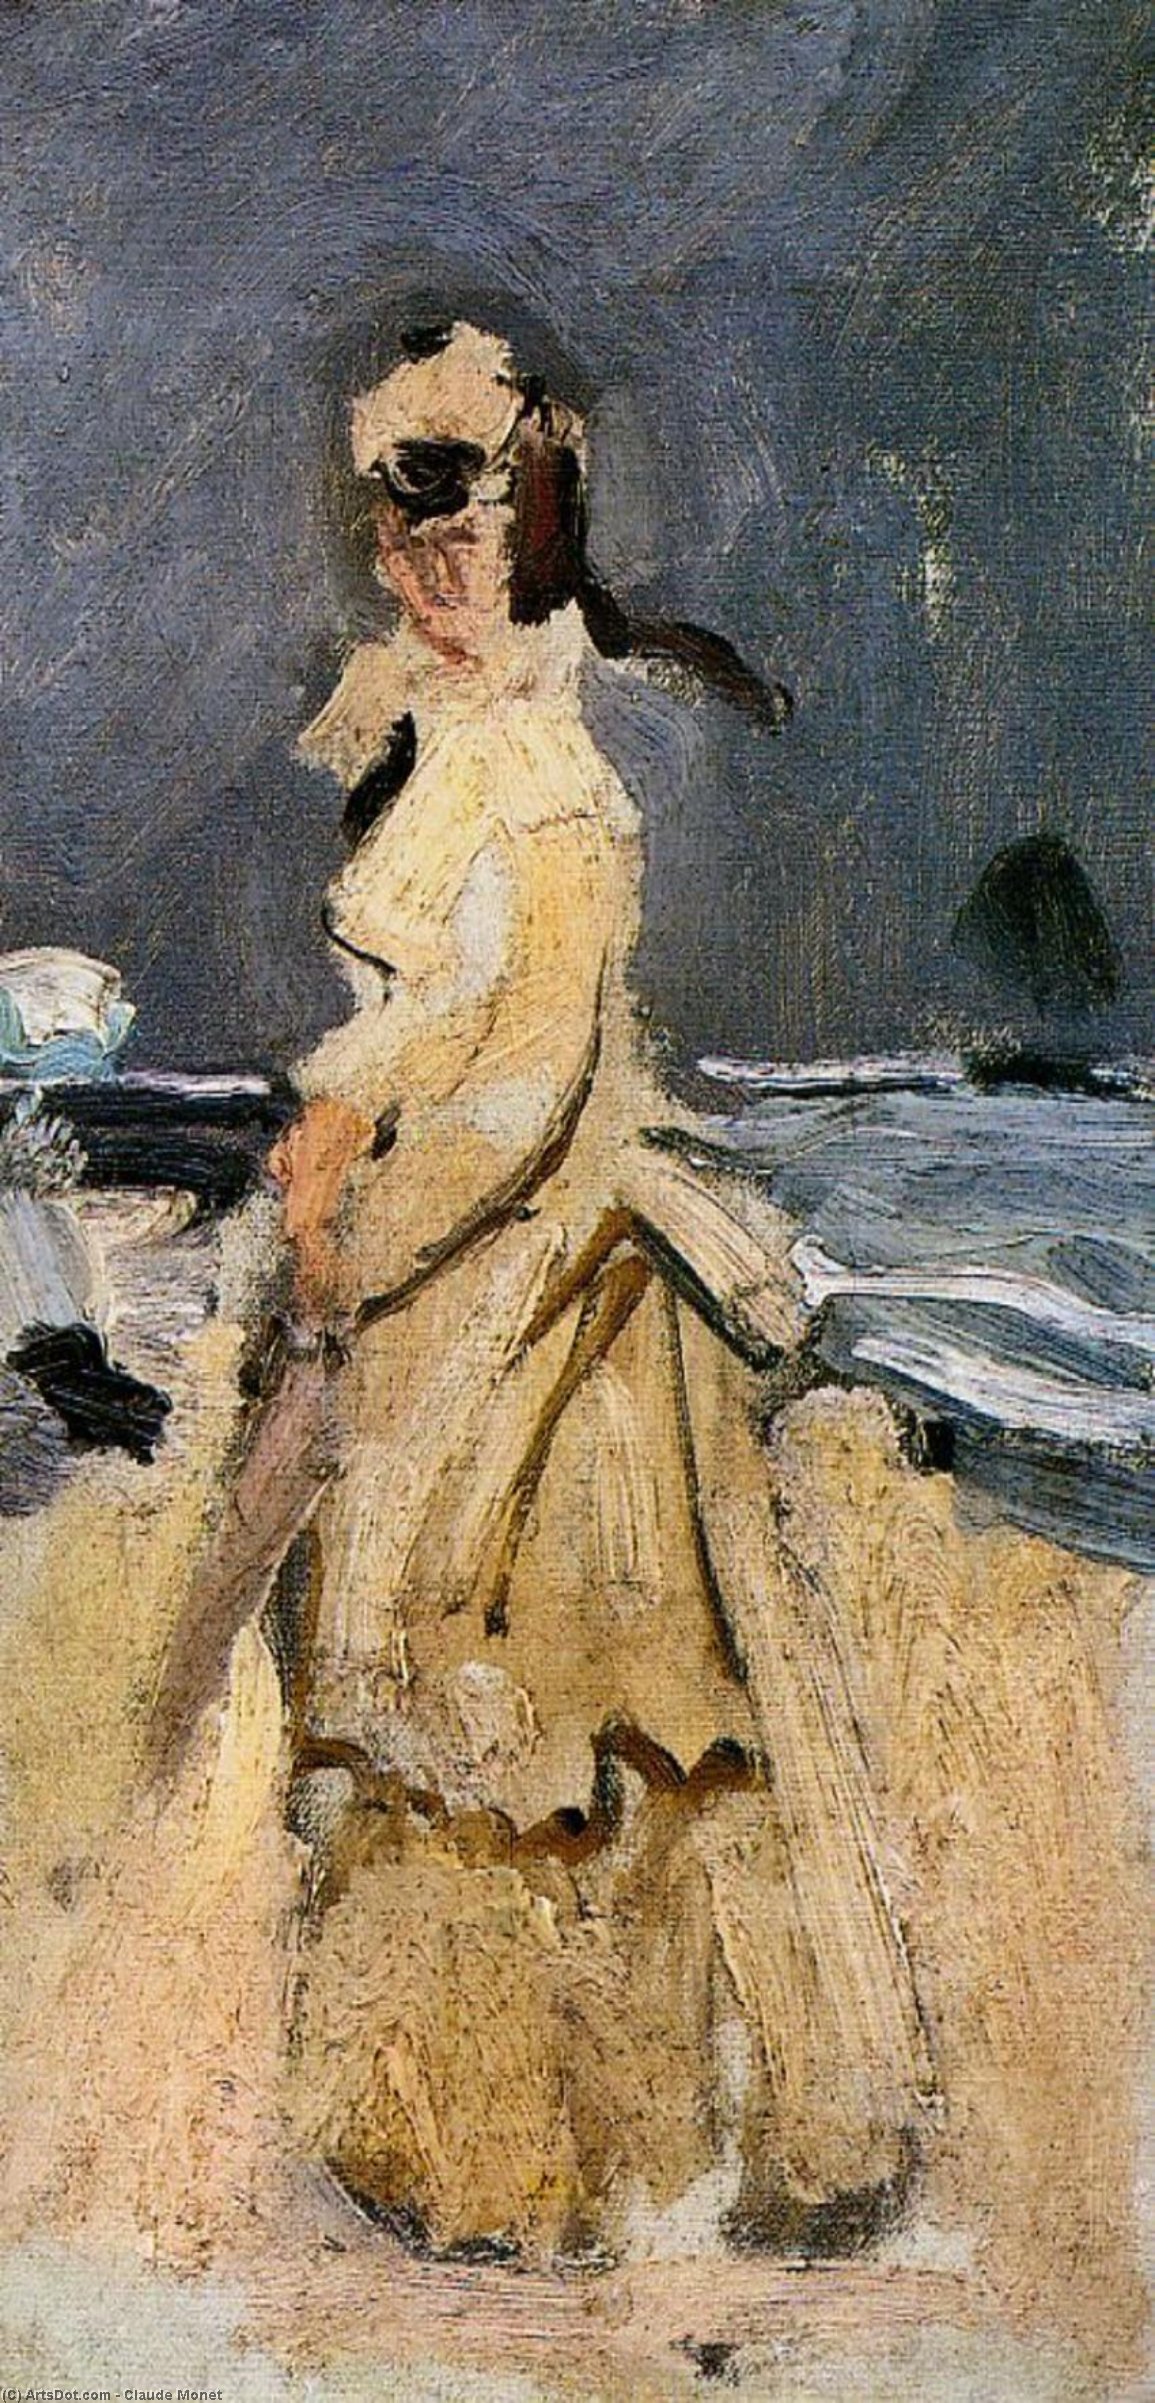 Acheter Reproductions D'art De Musée Camille sur la plage, 1870 de Claude Monet (1840-1926, France) | ArtsDot.com